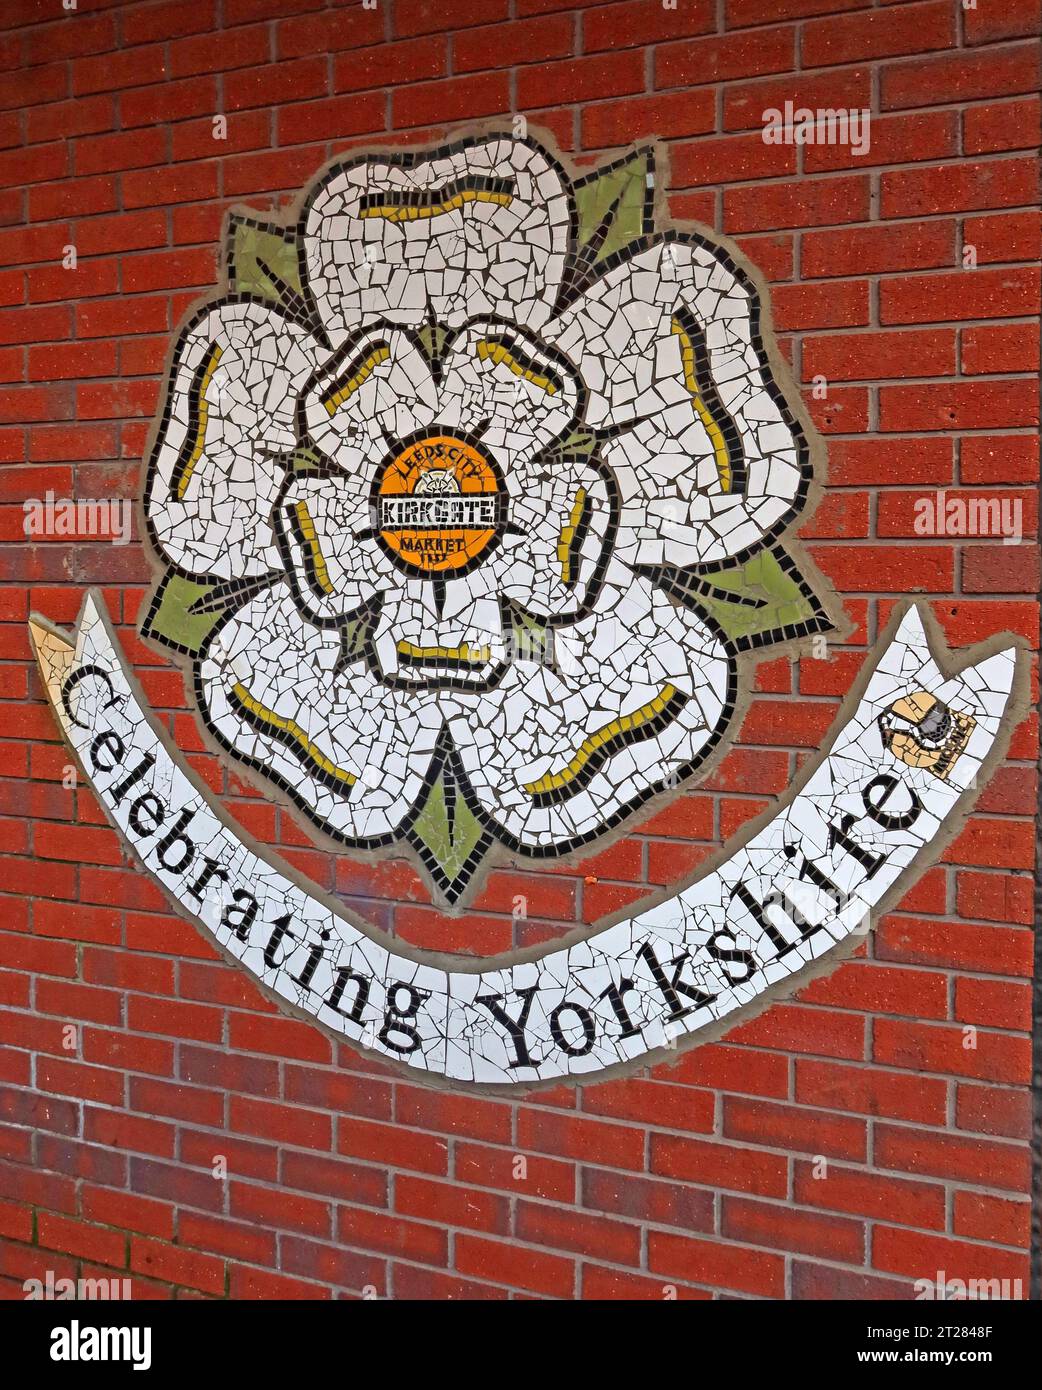 Leeds city Kirkgate markets mosaic , Leeds Kirkgate Market, Kirkgate, Leeds, West Yorkshire, England, UK, LS2 7HN Stock Photo